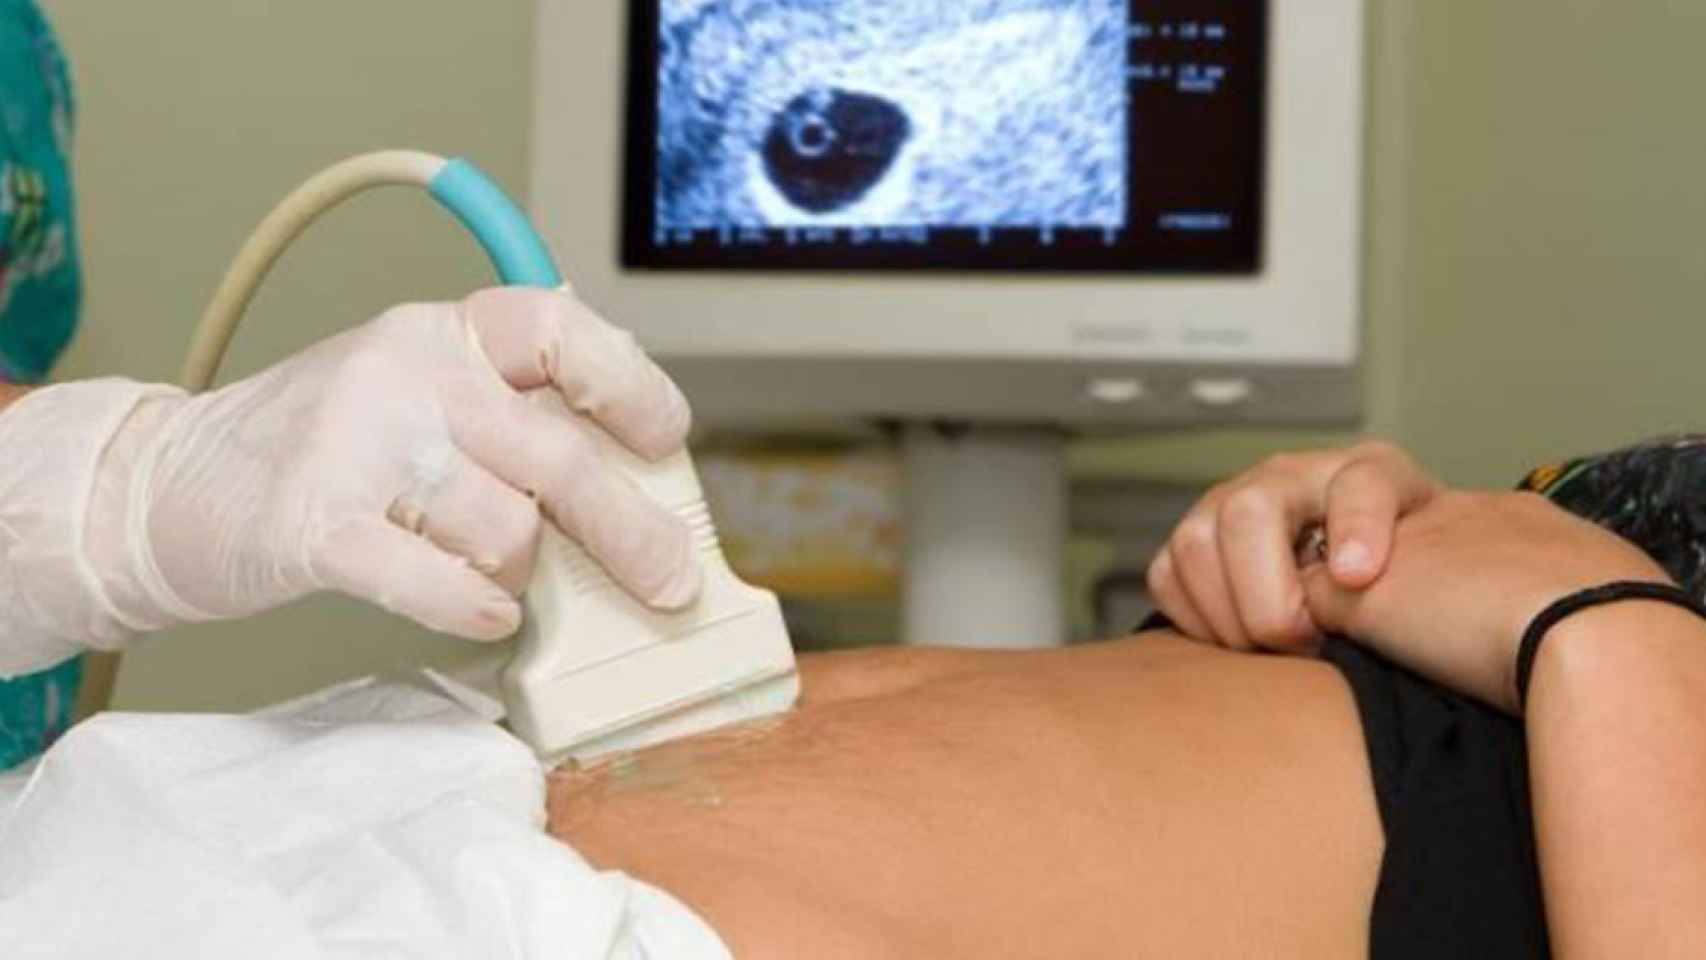 Un profesional realiza una ecografía a una mujer embarazada / EP